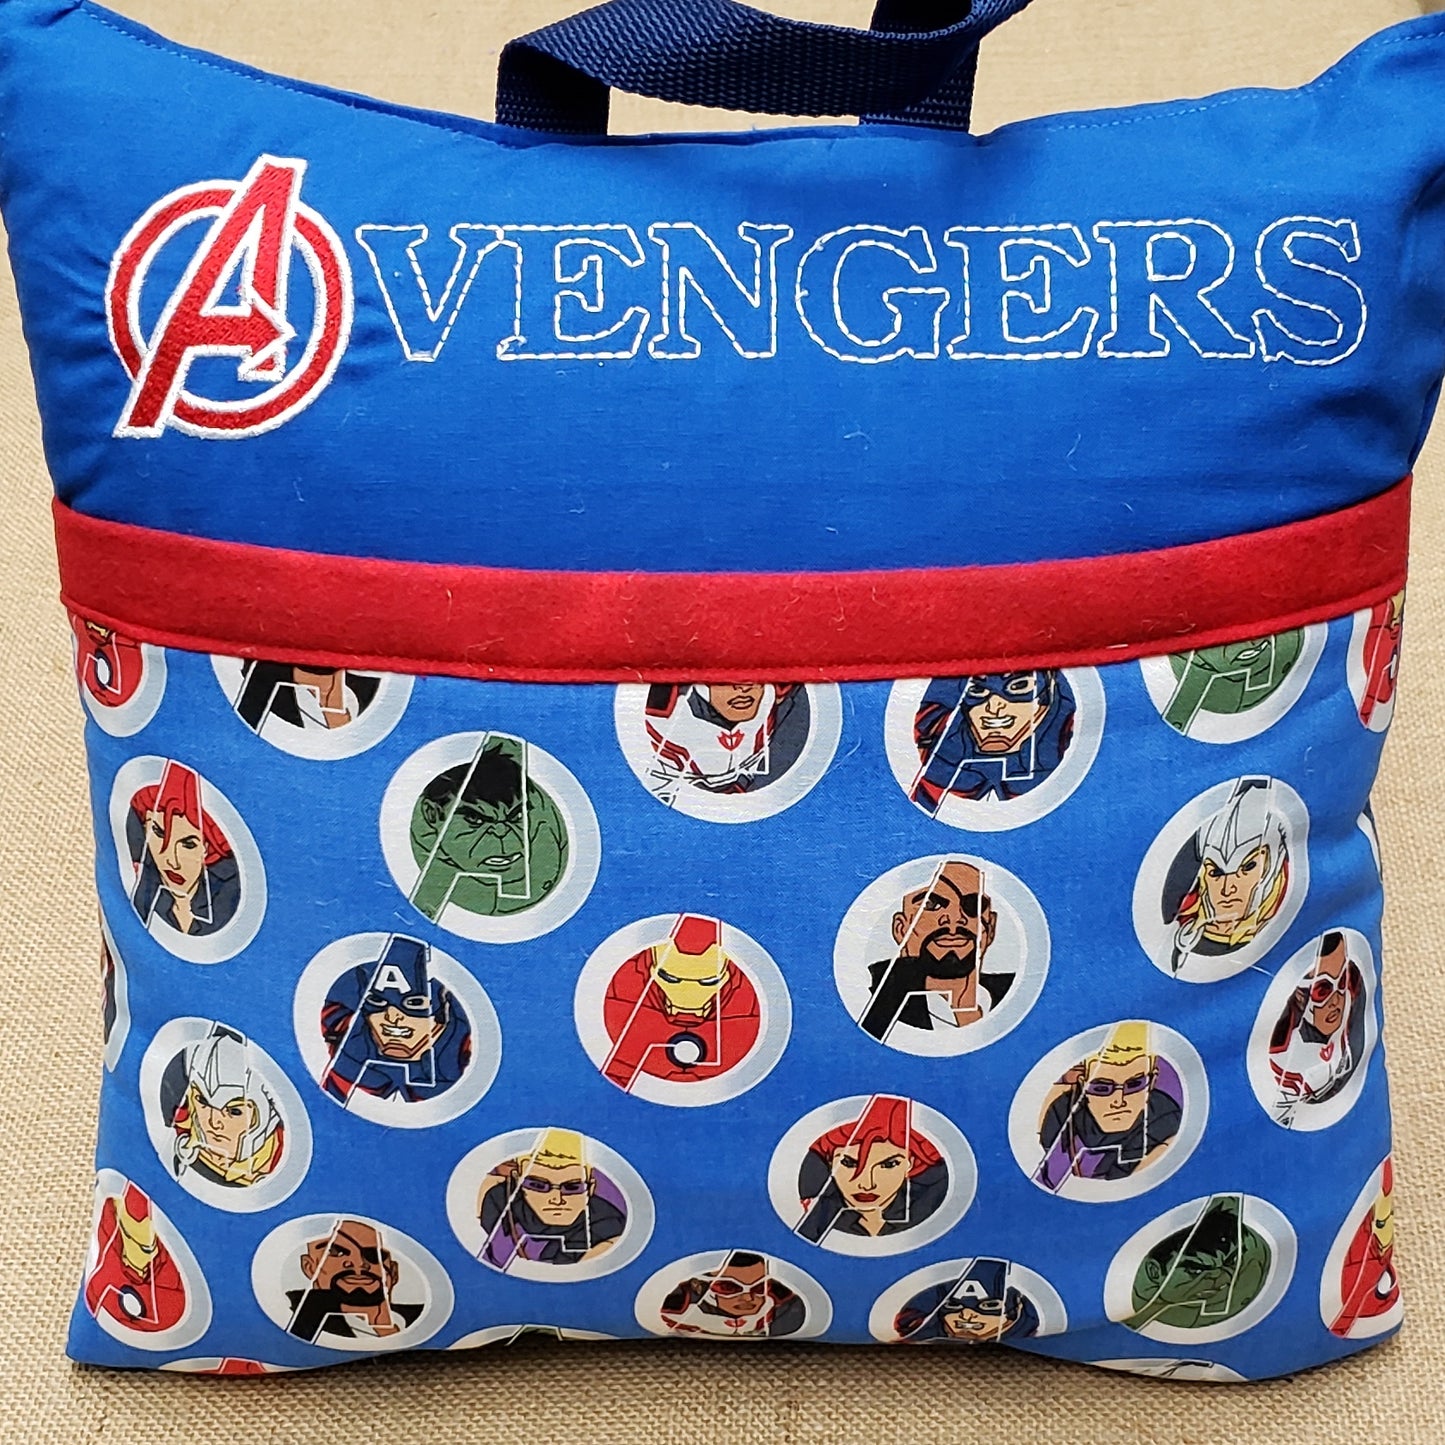 Avengers Pocket Reading Pillow Cover